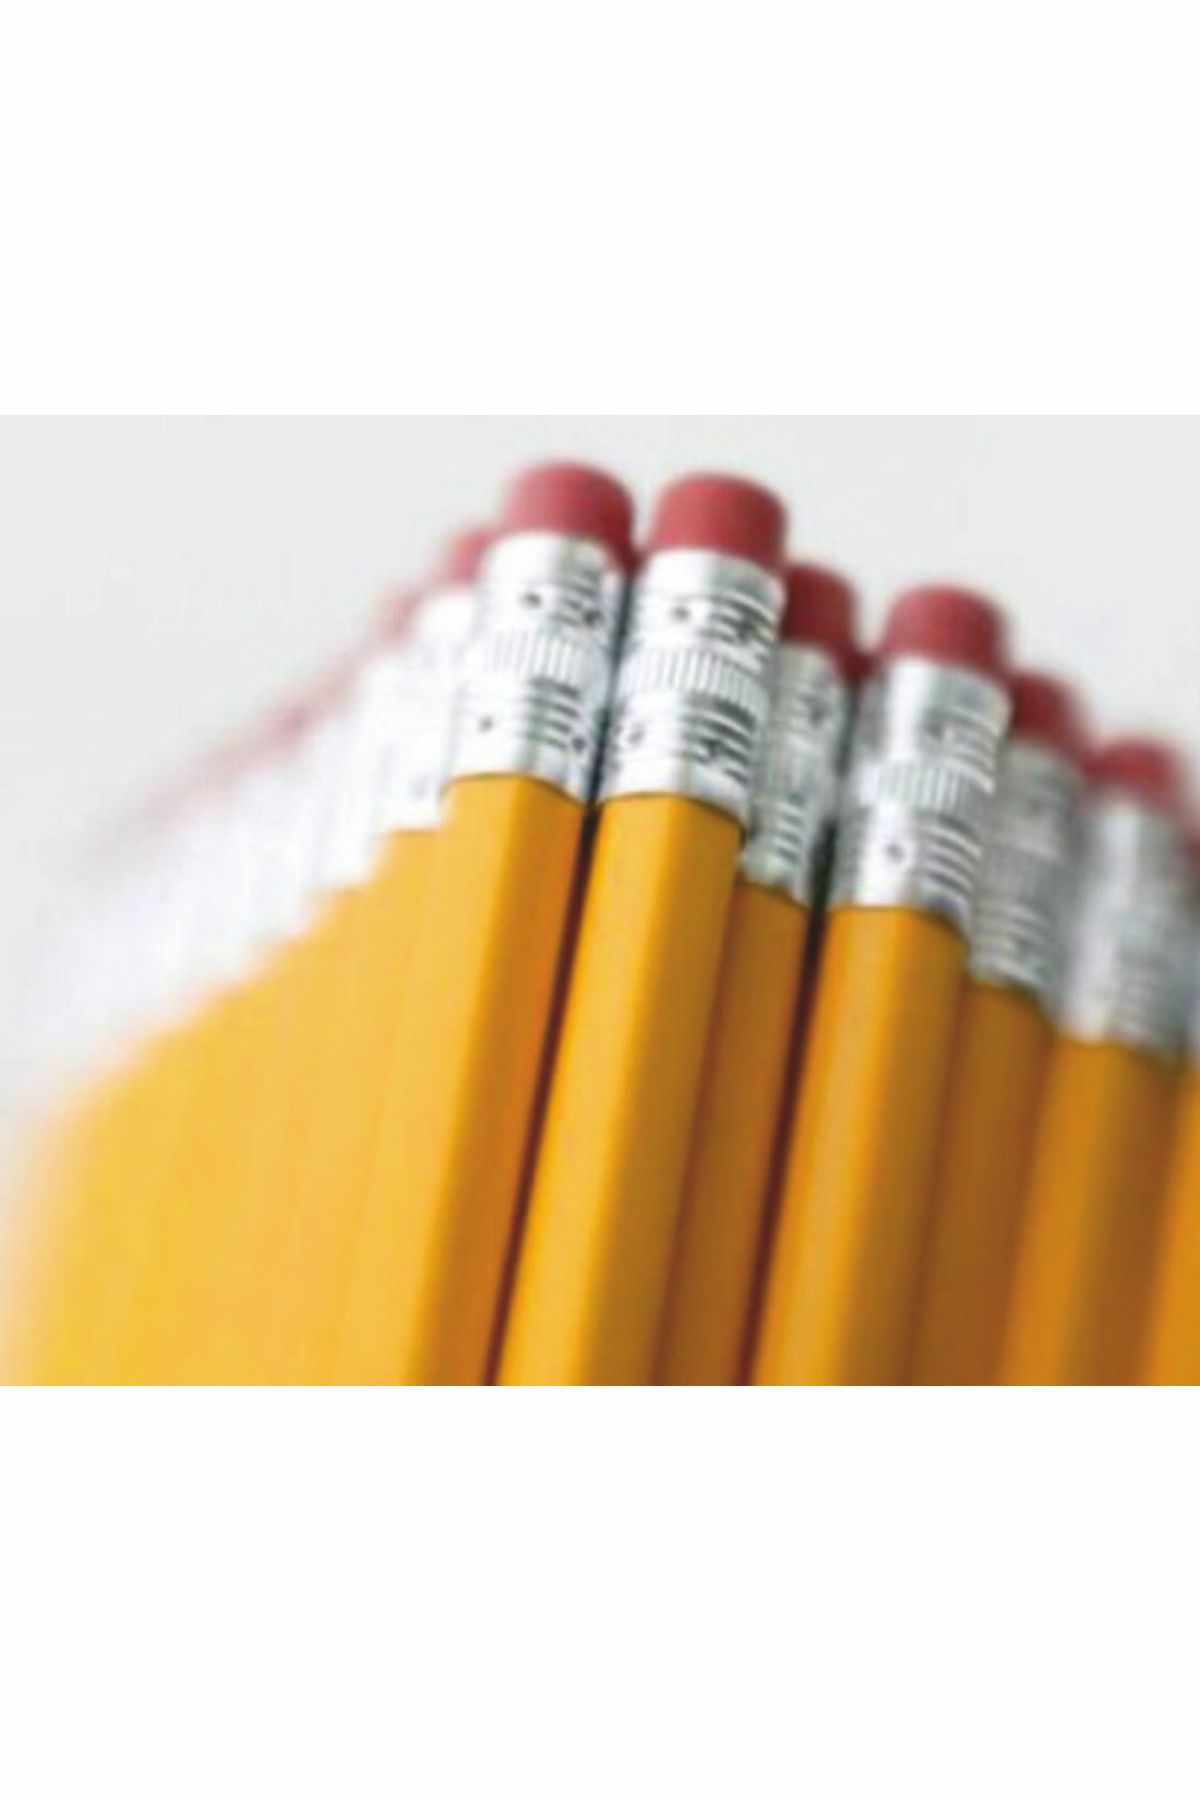 Adel 24 Adet Silgili Dünyanın En Çok Kullanılan Kurşun Kalem Modeli Klasik Sarı Hb Kutulu